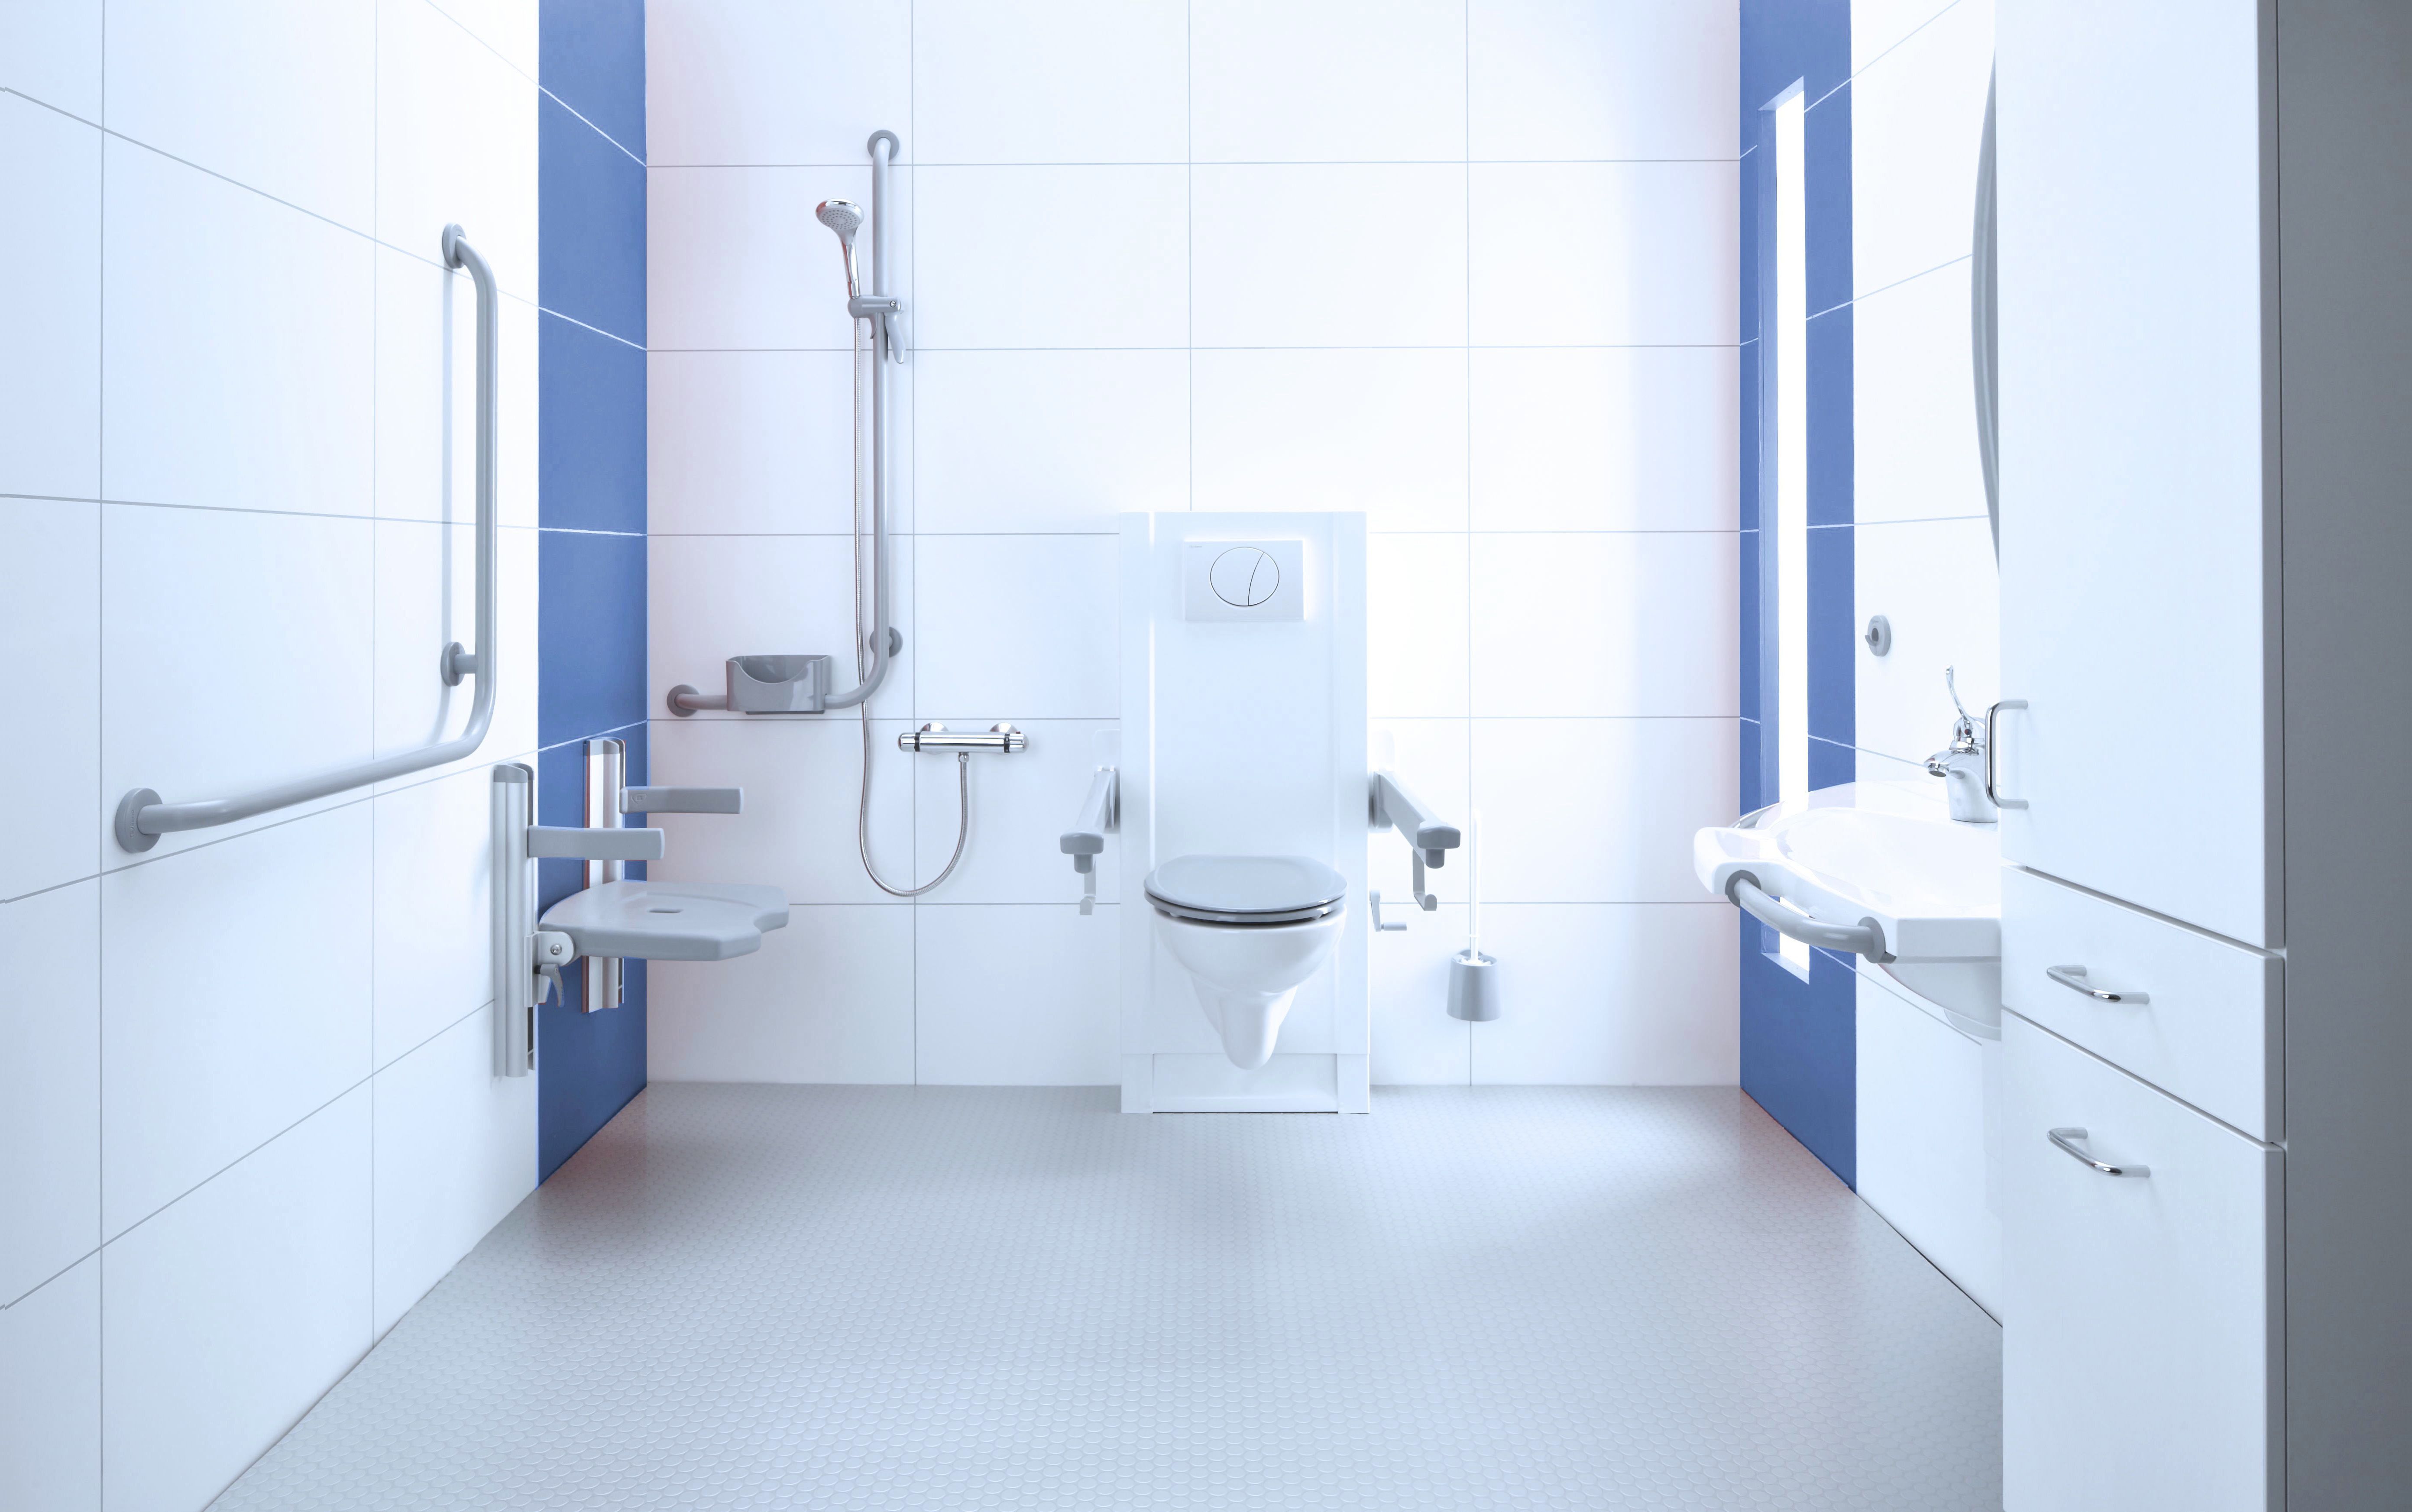 Foto : Zorgexperts hebben deze aangepaste badkamer mede-ontwikkeld.